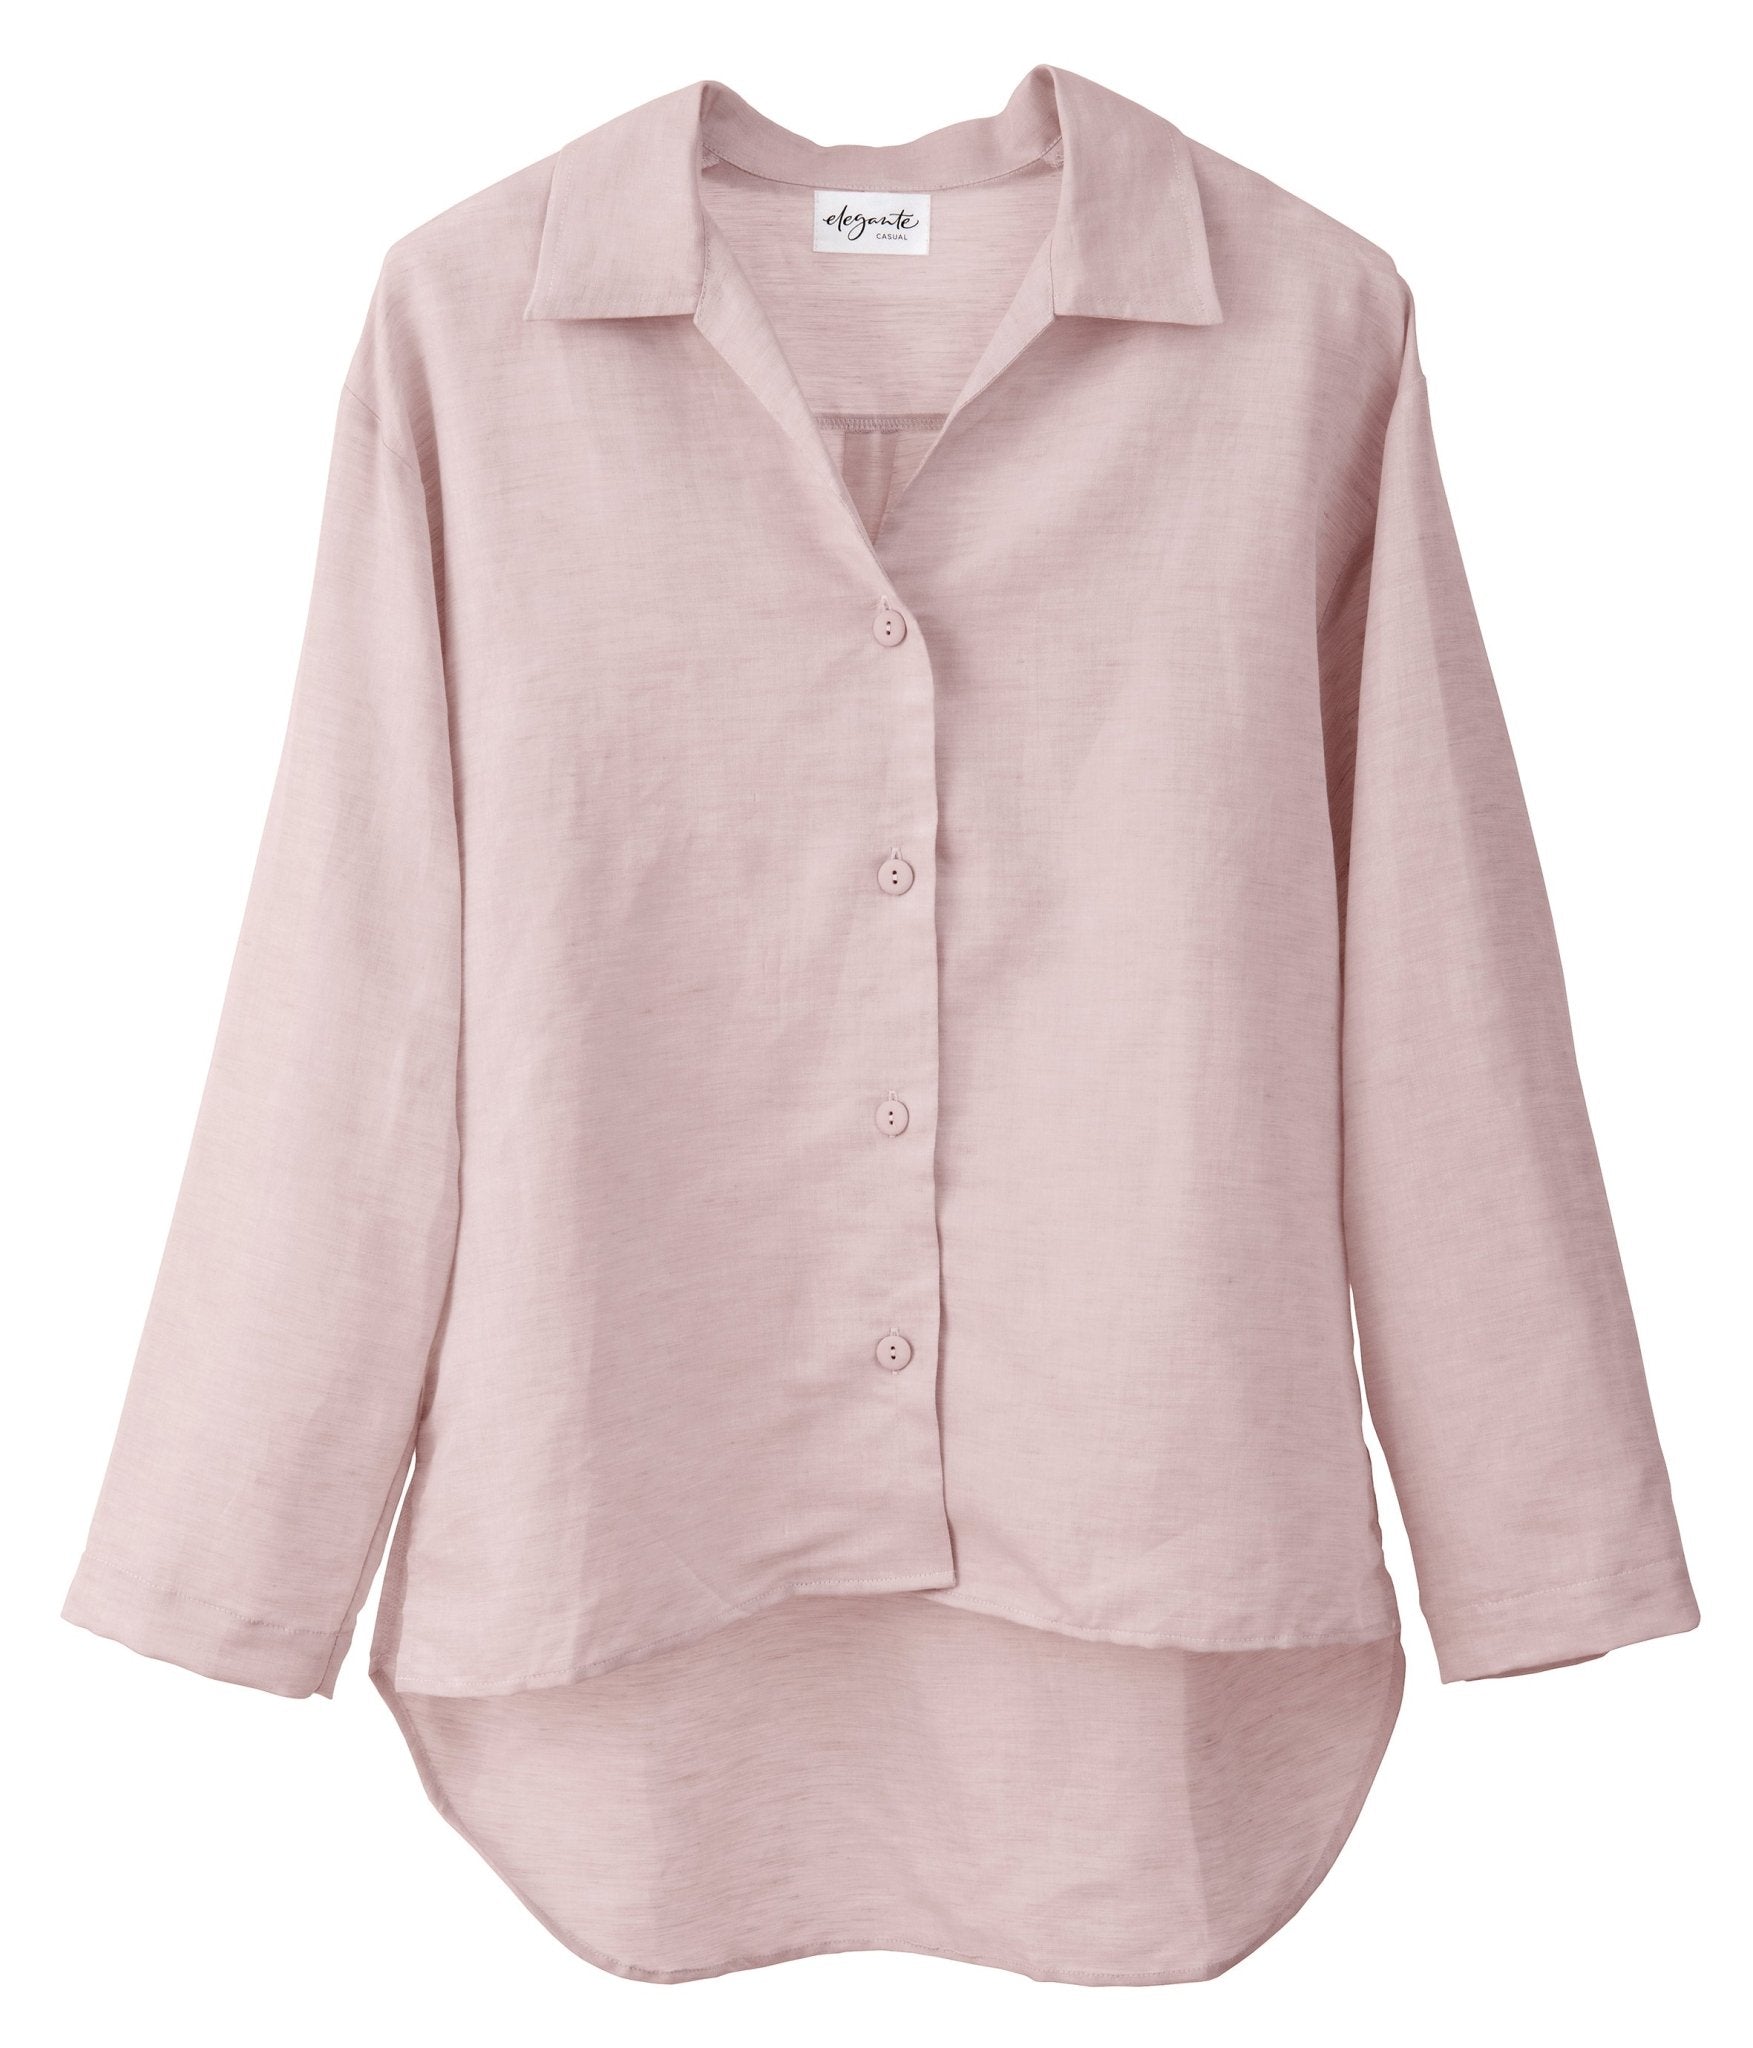 Halbleinen Homewear PJ Shirt in Rose Model Freisteller